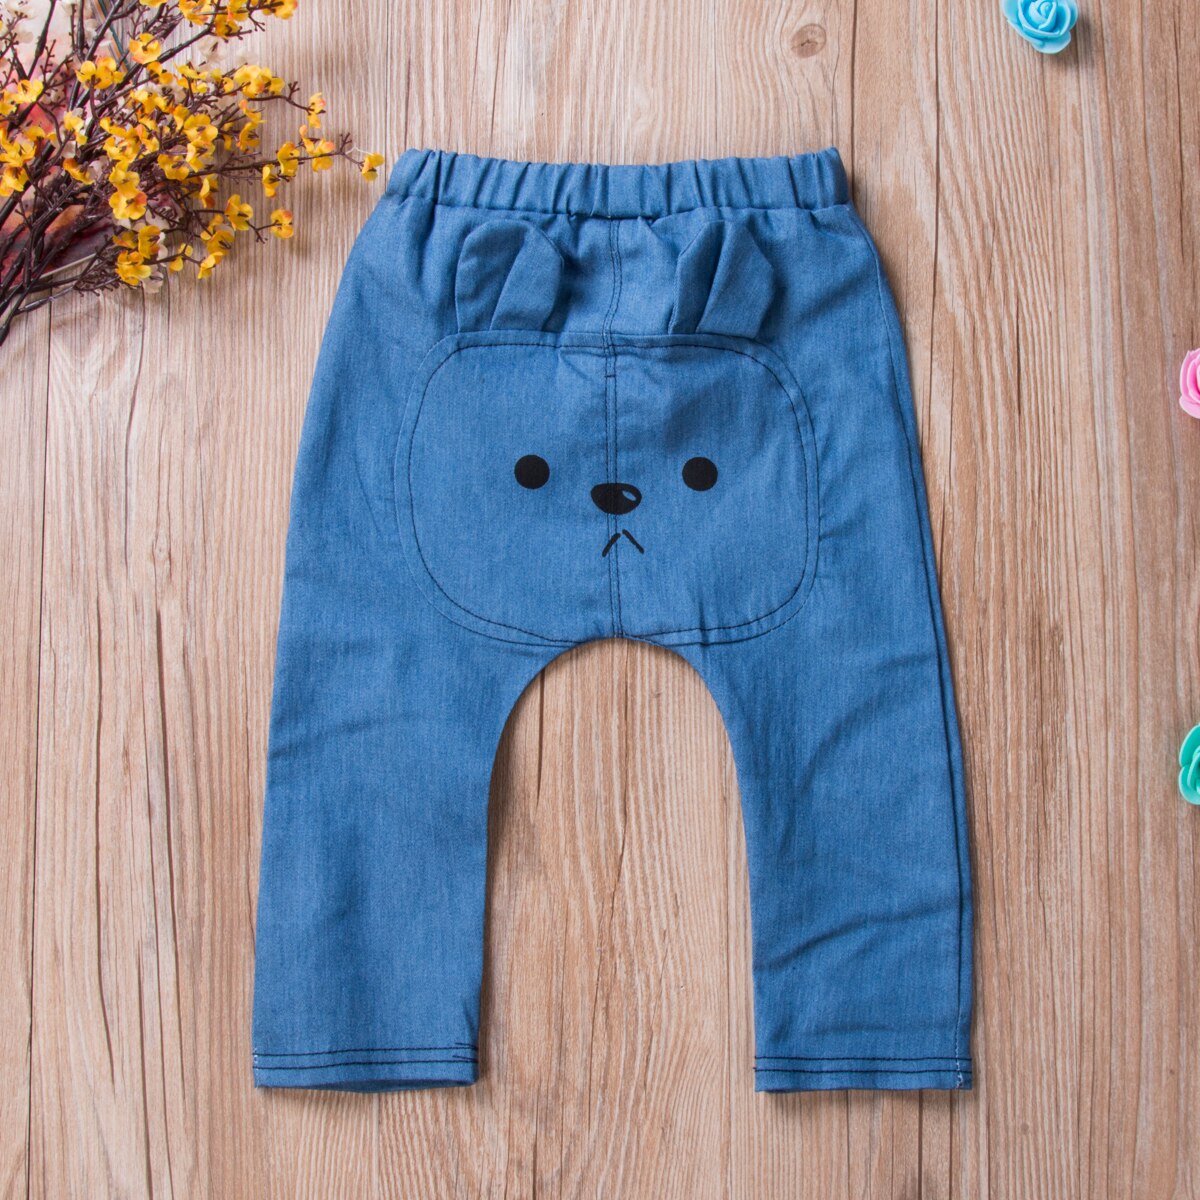 Toddler baby piger drenge 0-3t tegneserie print lange bukser harembukser blå denim elastisk talje bukser underdele leggings sweatpants